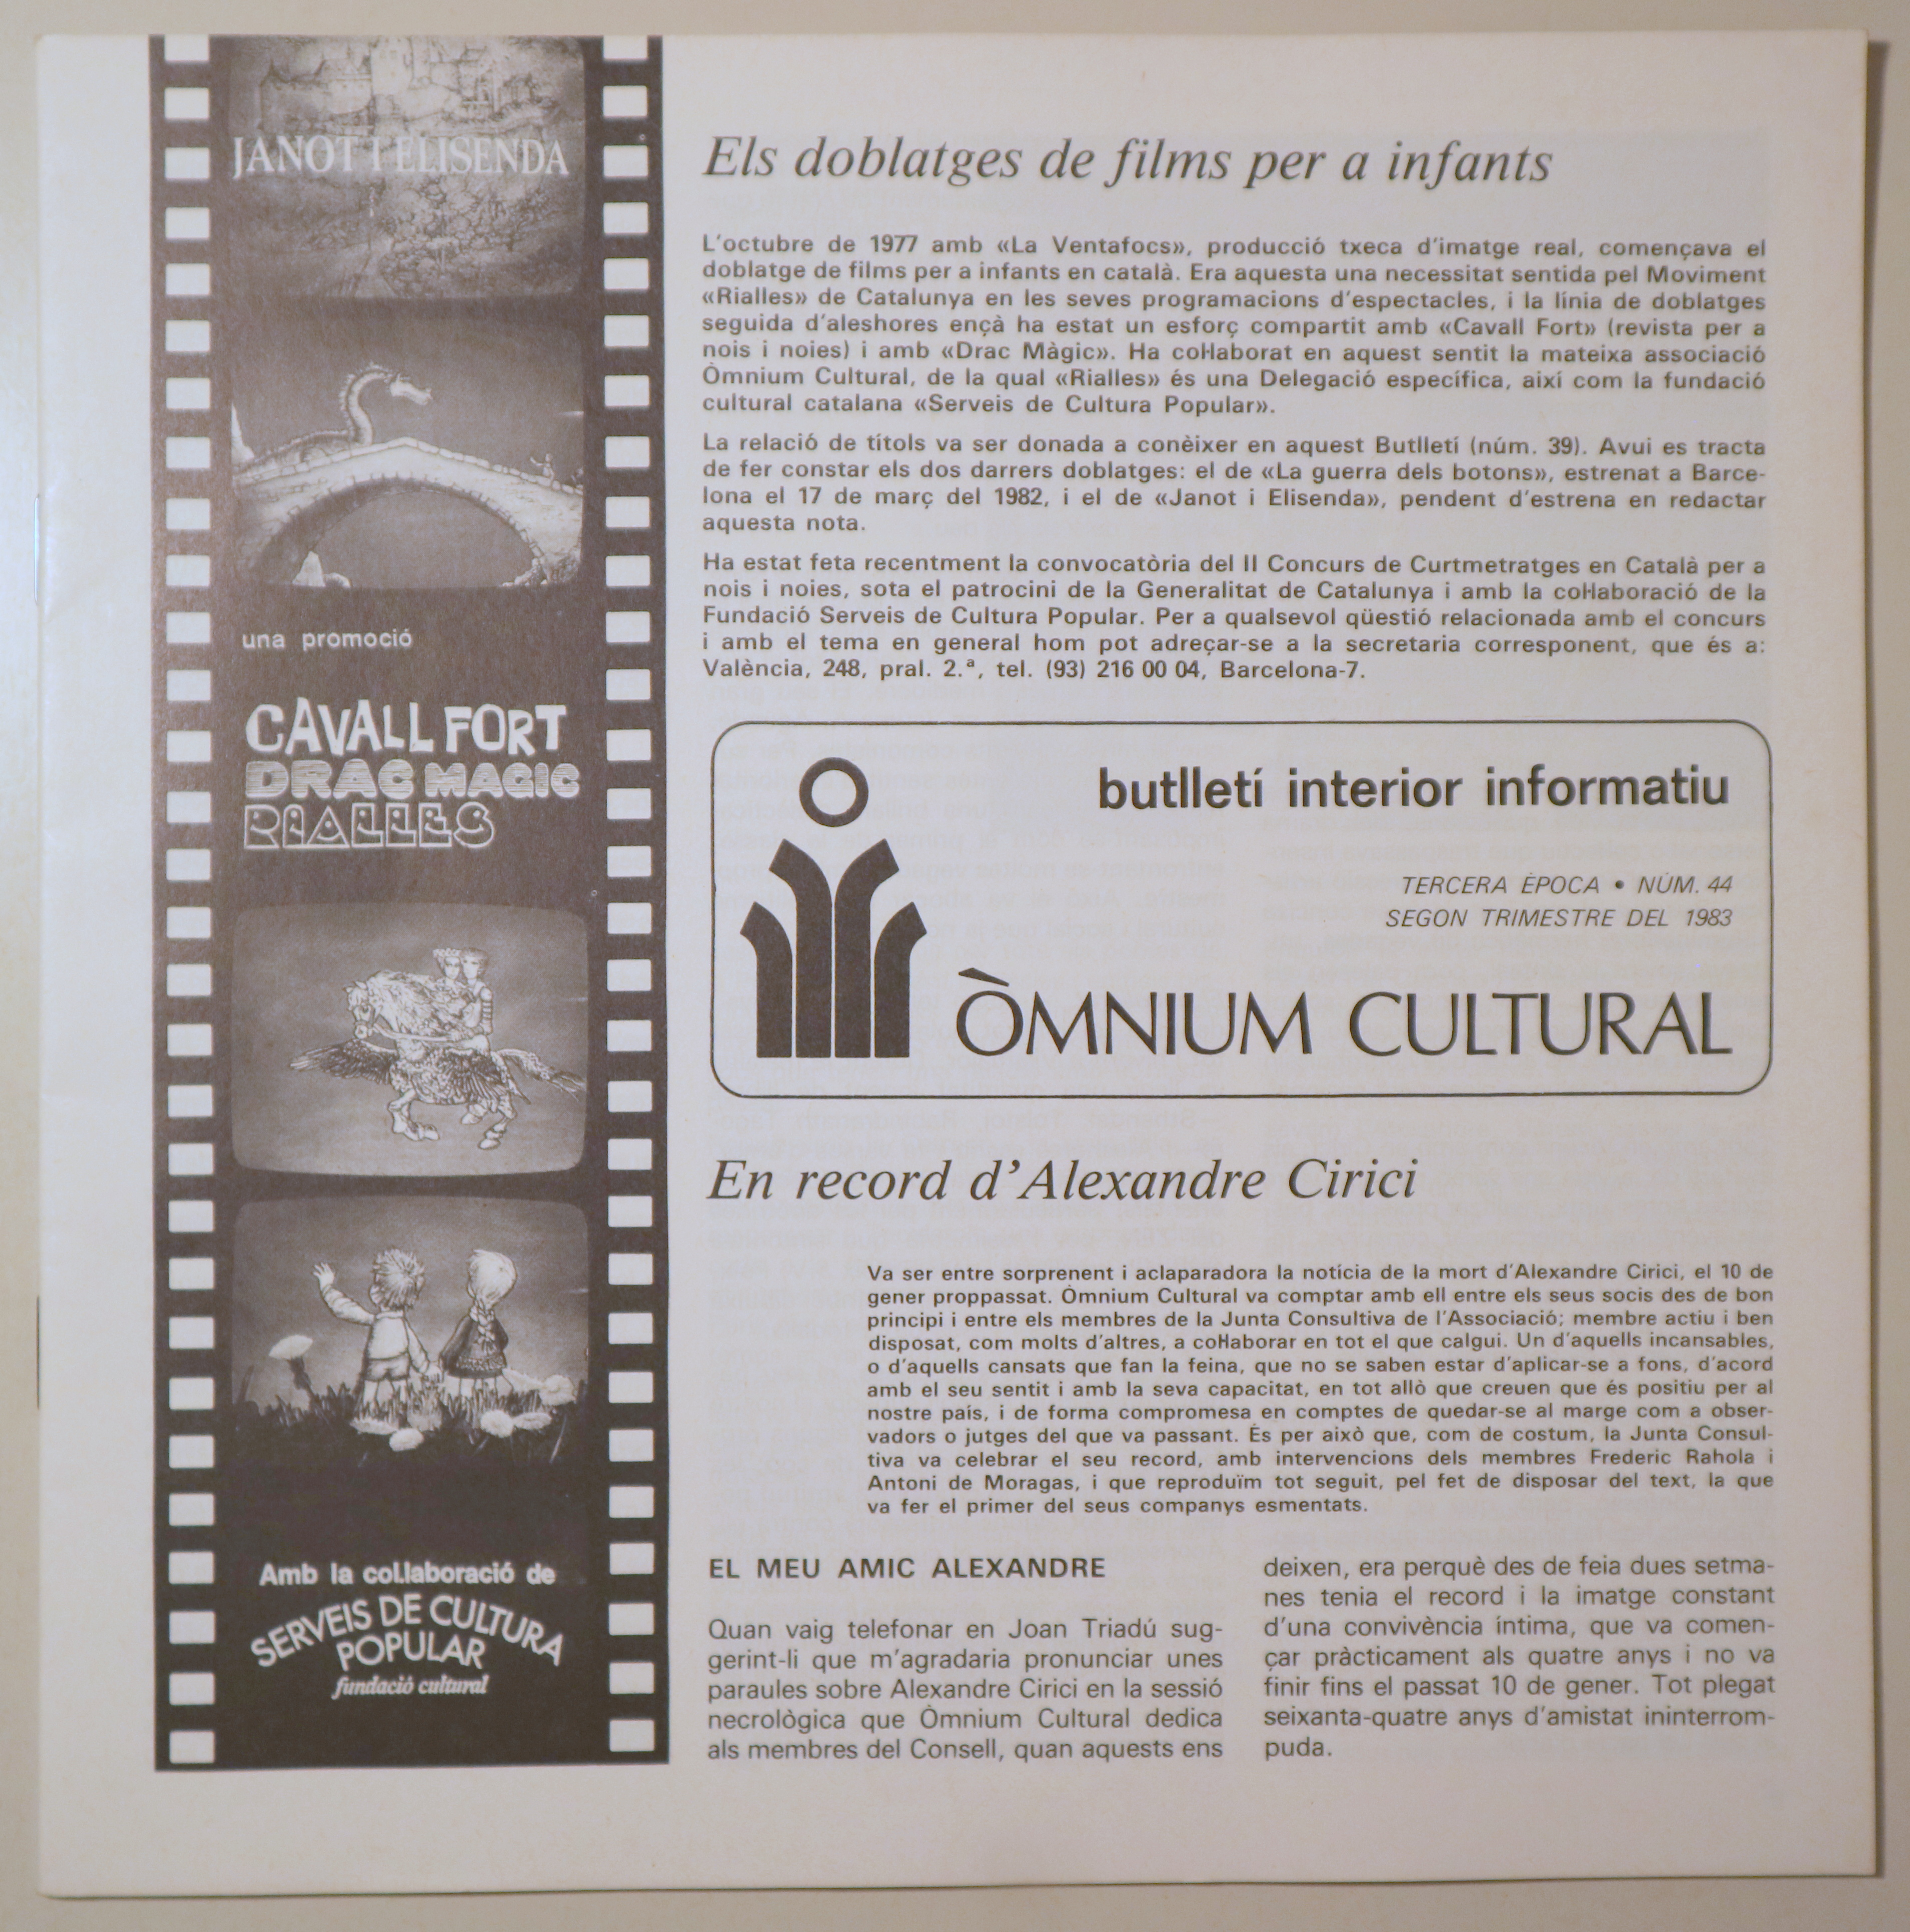 BUTLLETÍ INTERIOR INFORMATIU D'ÒMNIUM CULTURAL 3ª època, núm. 44. Segon trimestre de 1983 - Barcelona 1983 - Il·lustrat